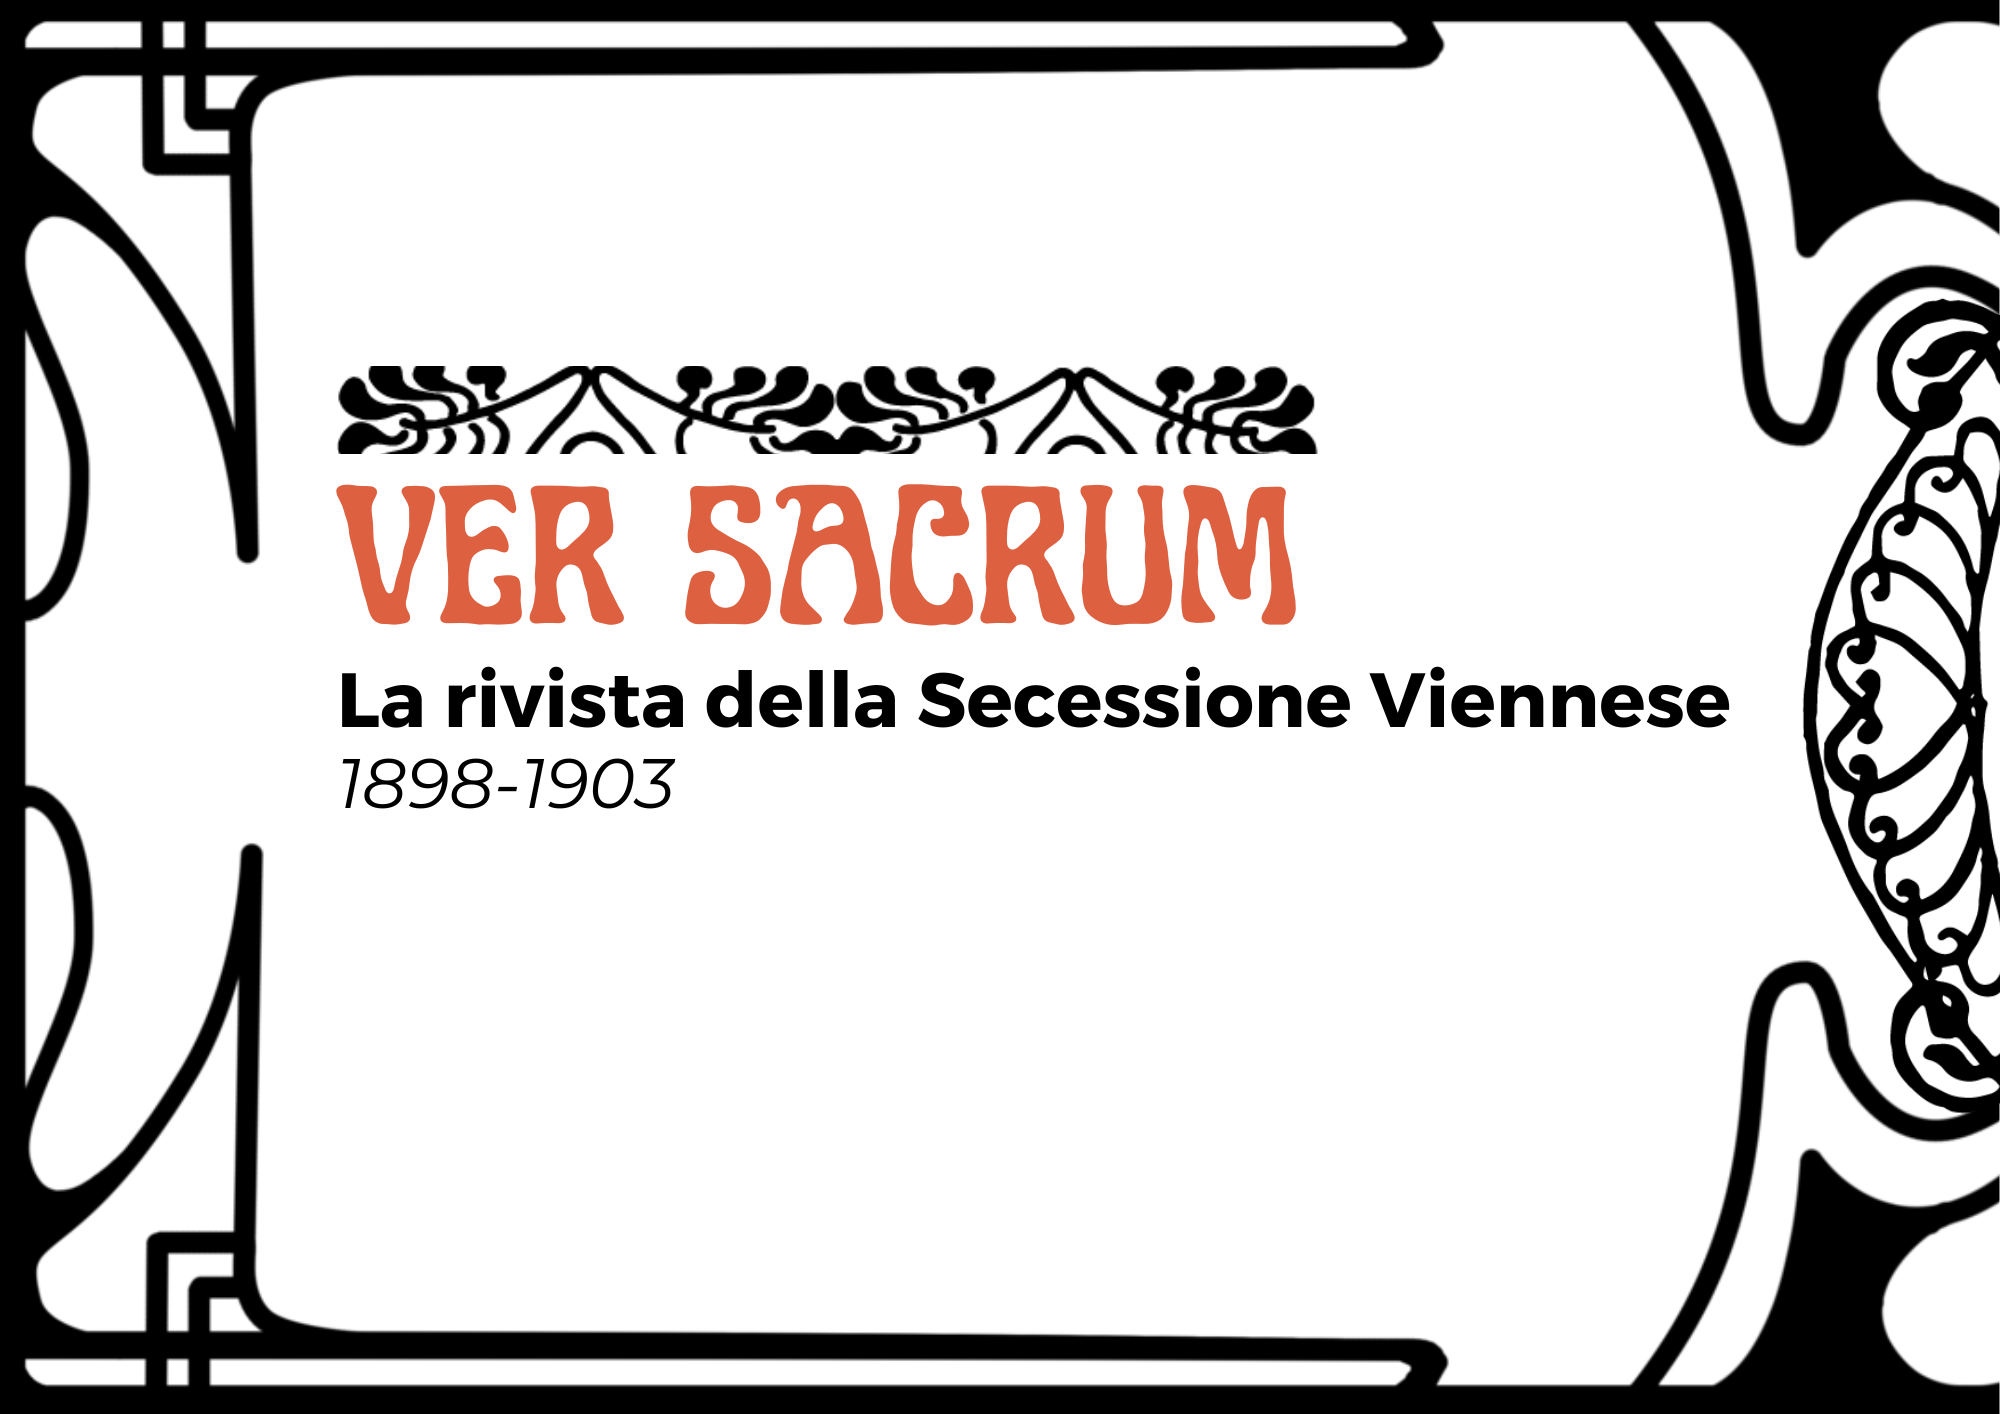 Ver Sacrum - La rivista della Secessione Viennese